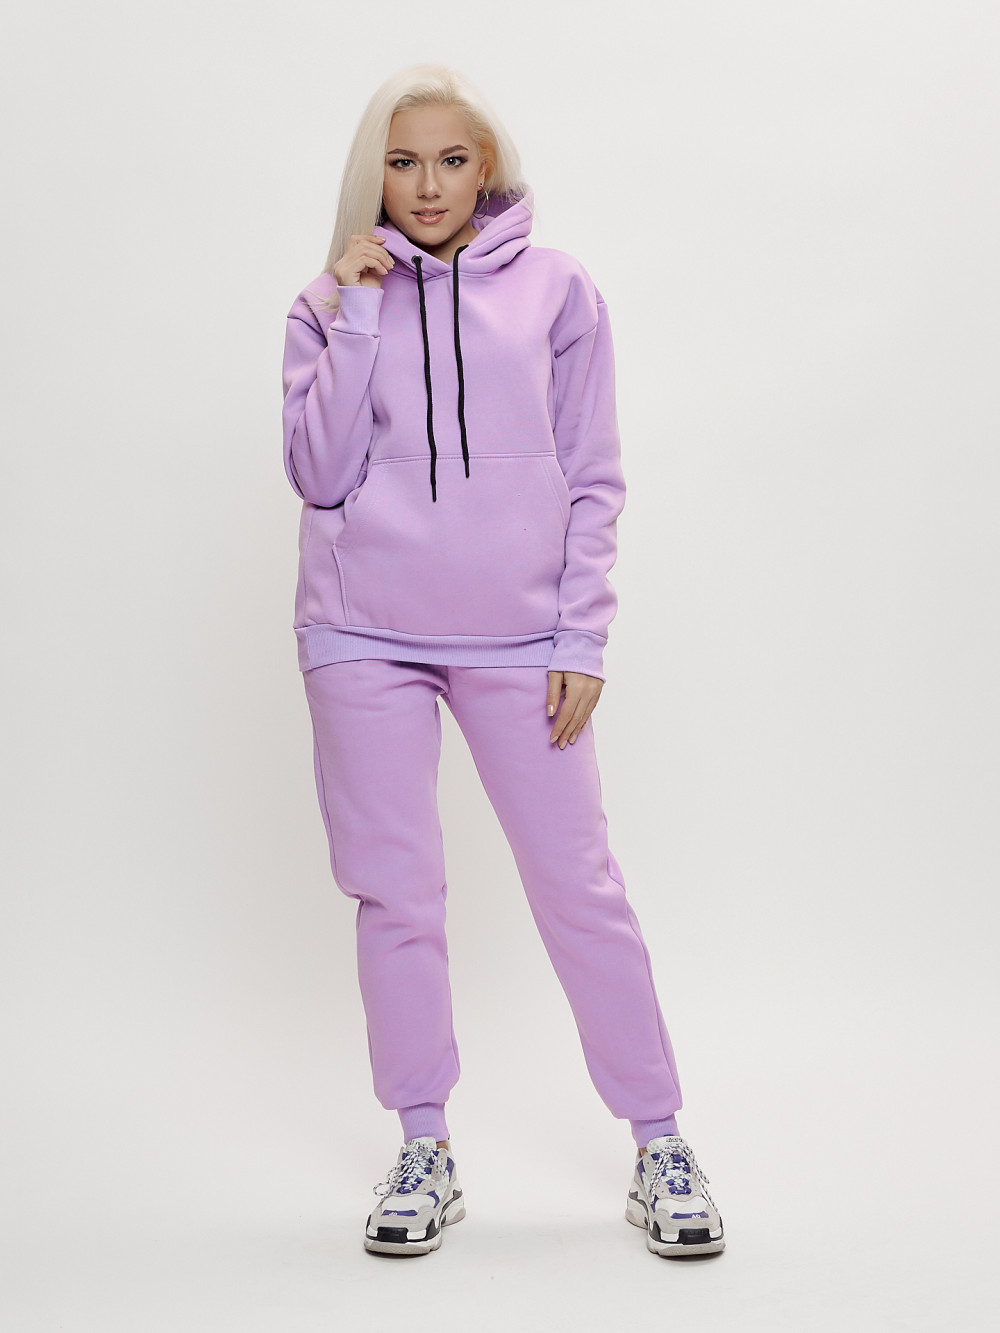 Купить оптом Трикотажный спортивный костюм женский с начесом фиолетового цвета 1084F в Казани